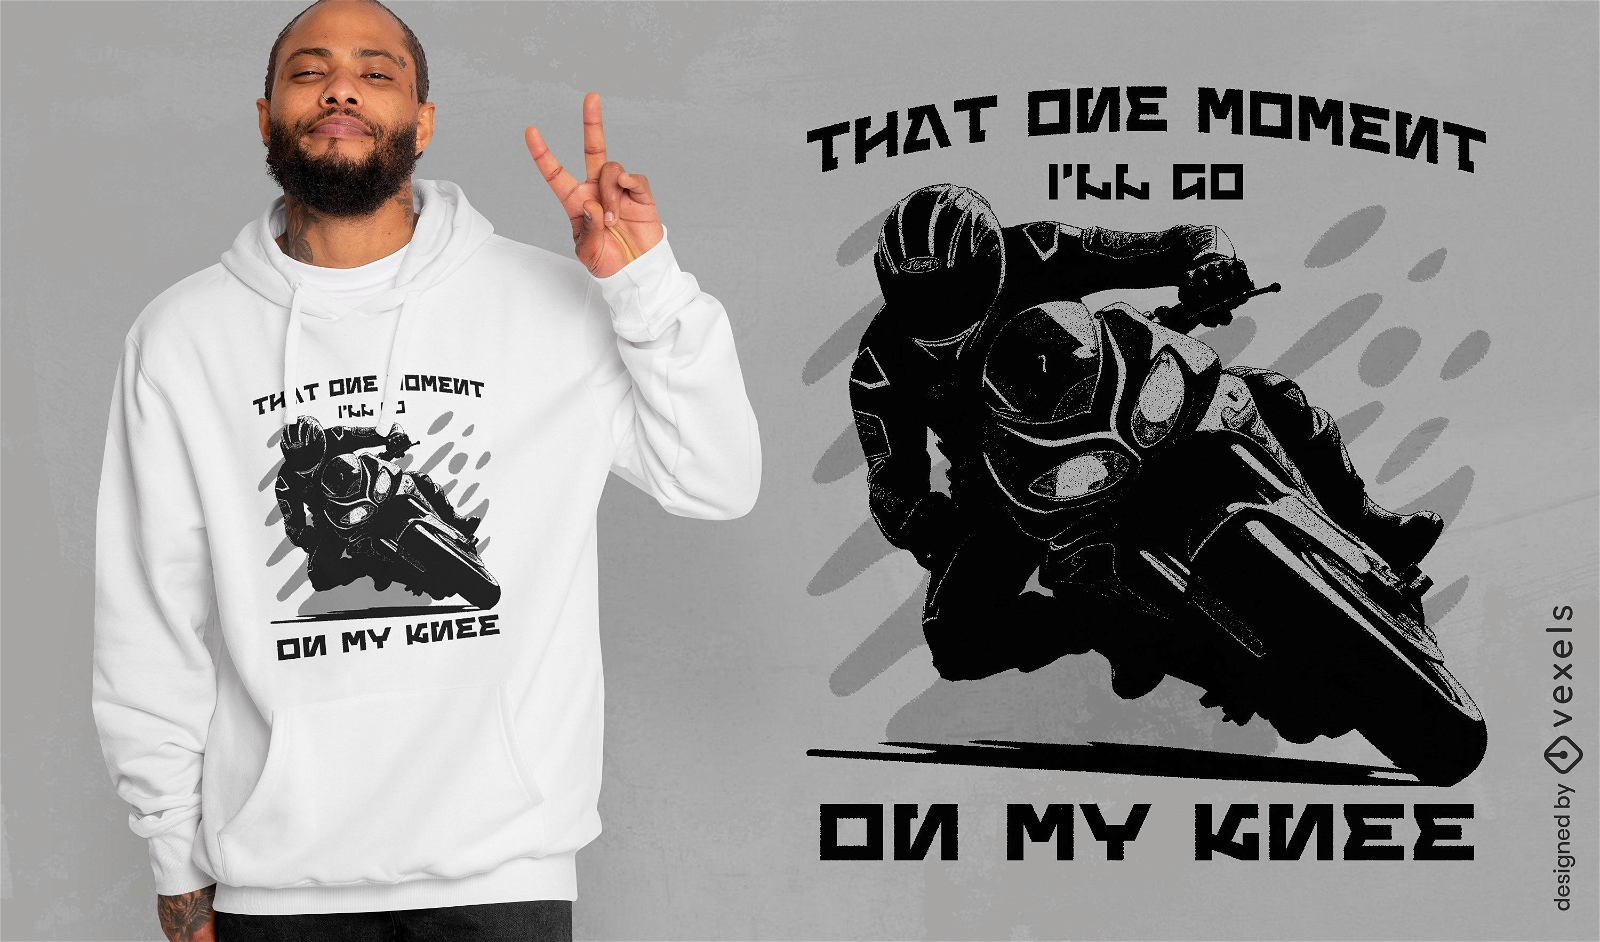 Motorrad-Knie-Down-T-Shirt-Design